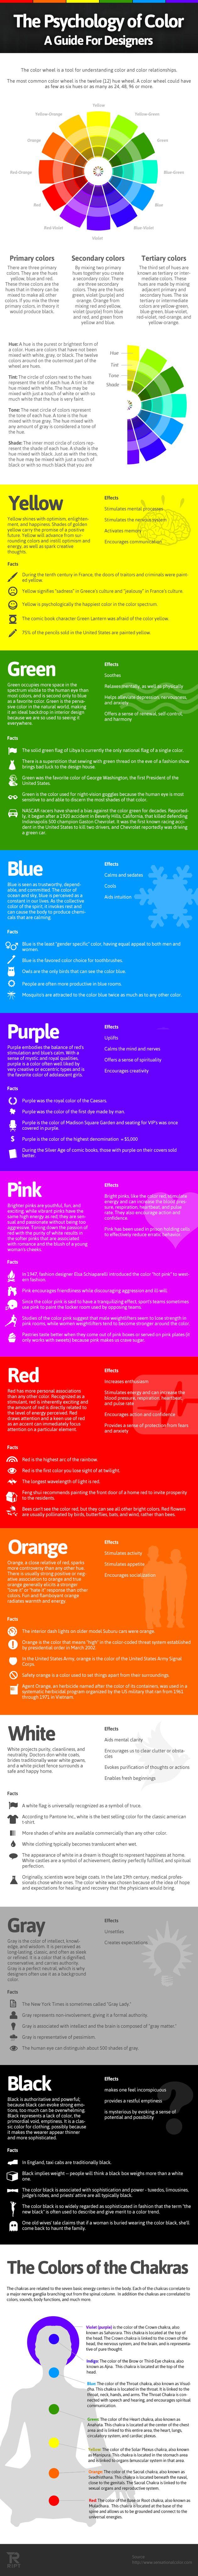 زفاف - A Color Selection Guide For Designers - Infographic